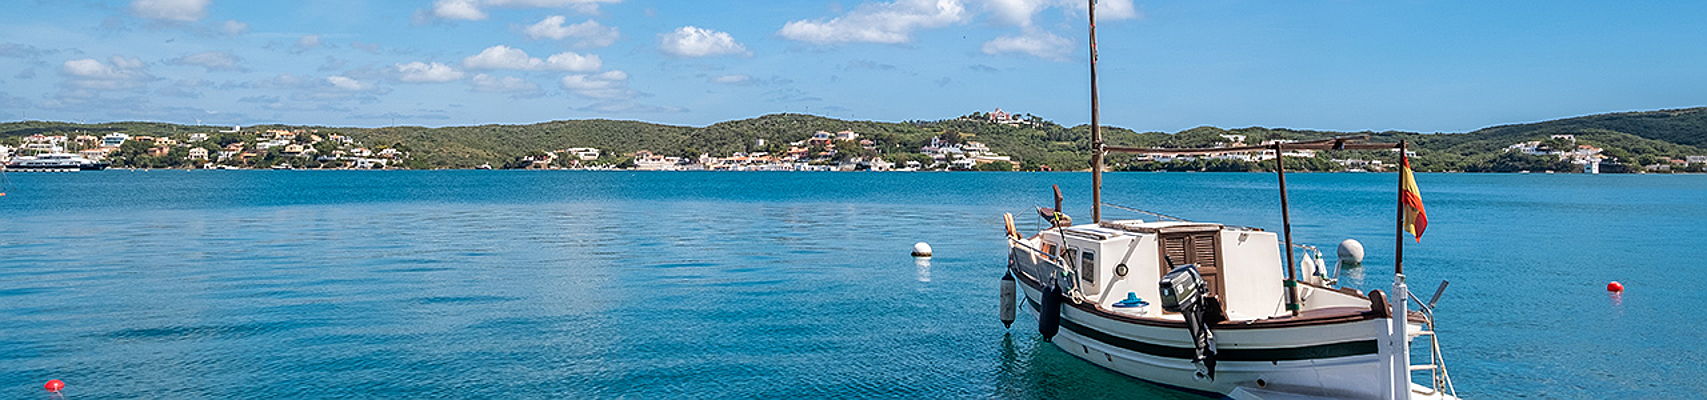  Mahón
- Menorca Boot Fonduco Hafen